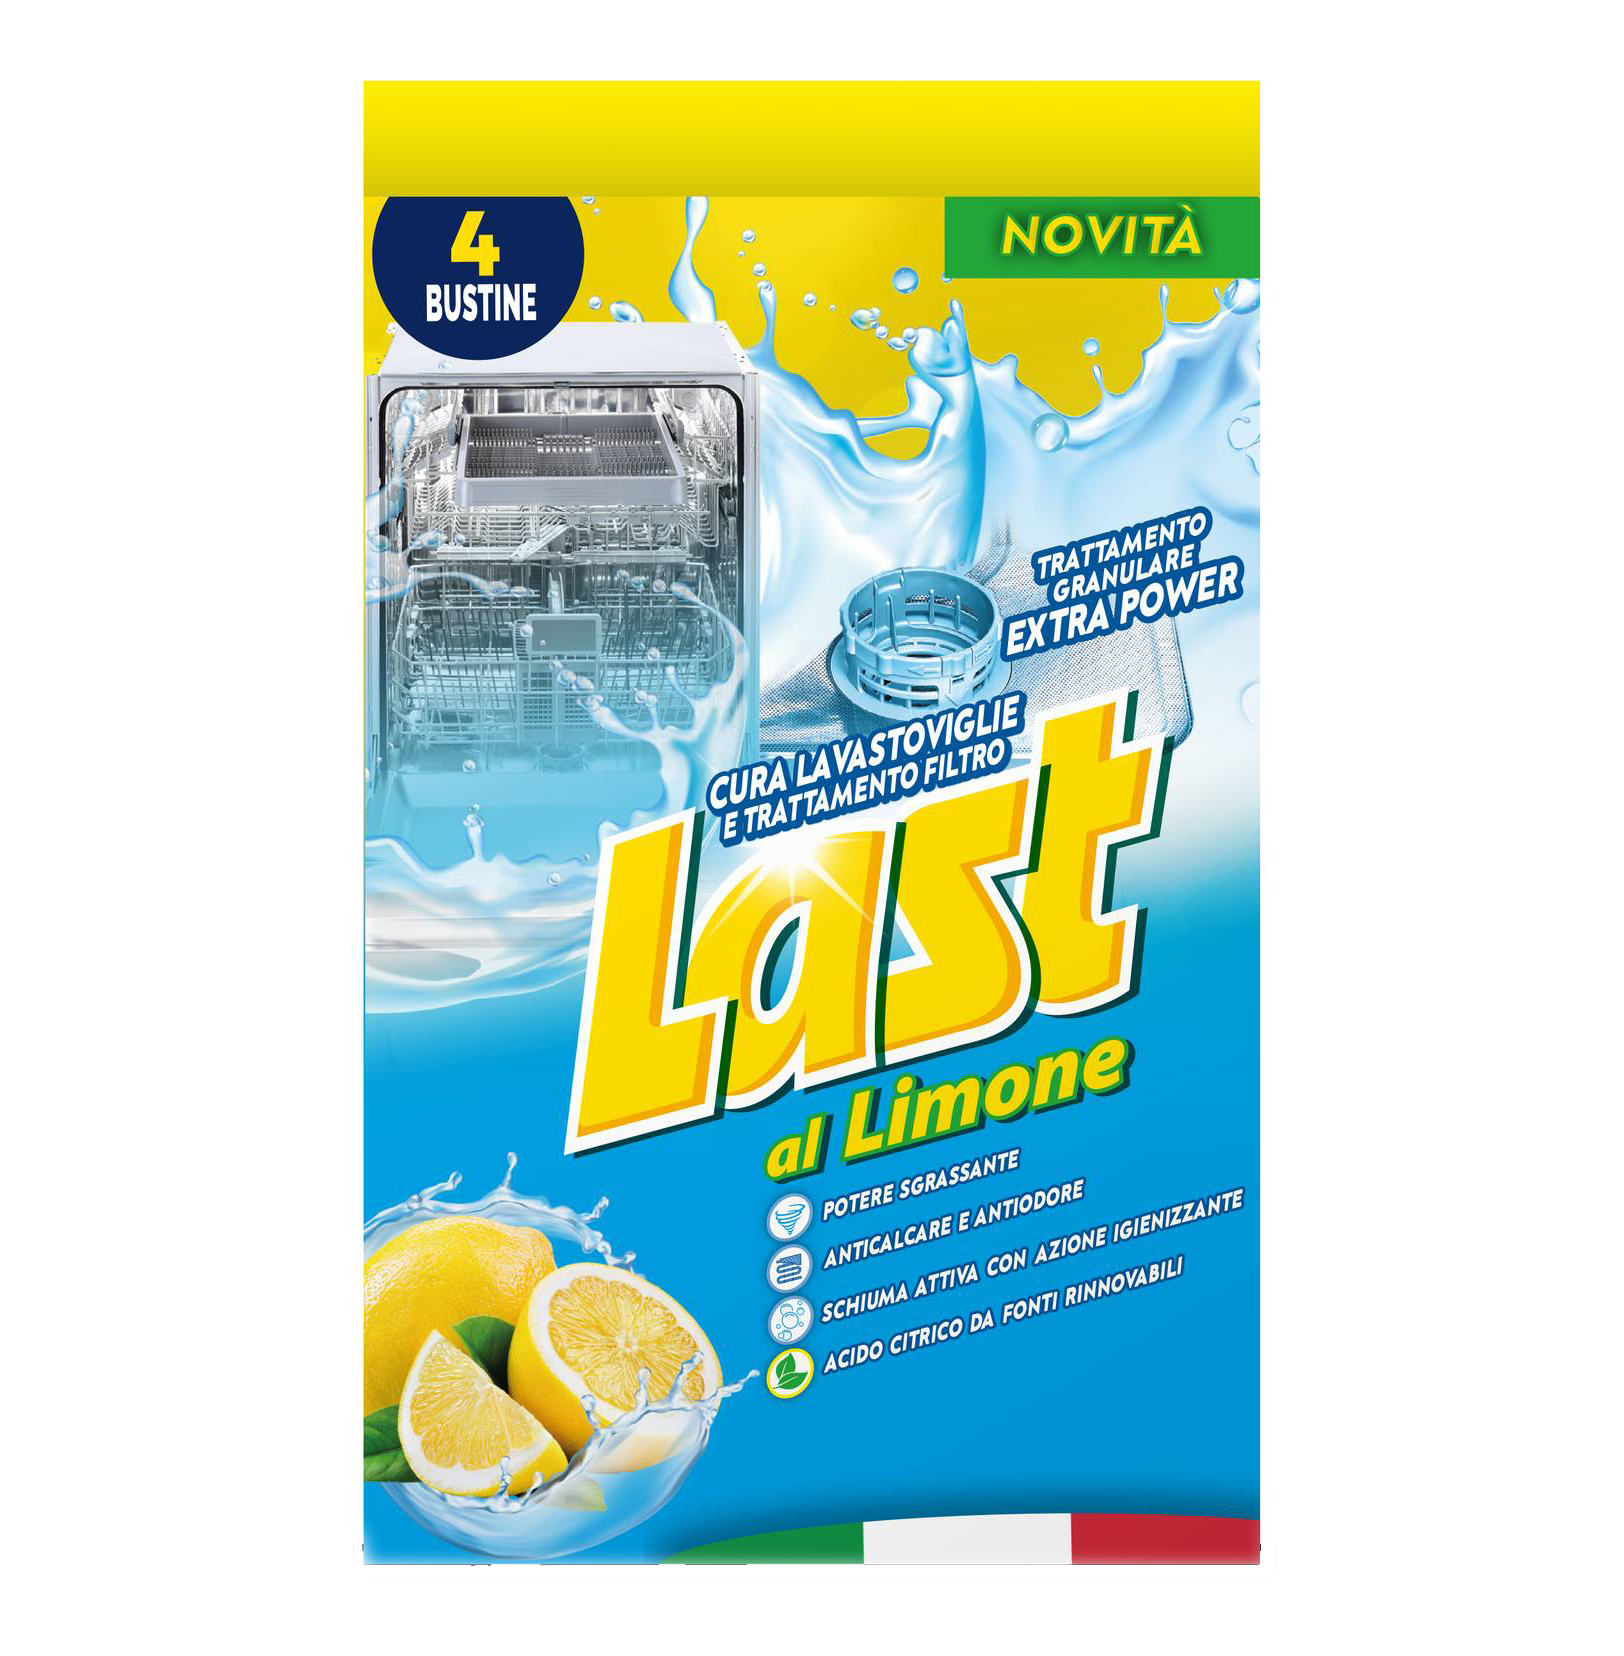 lavastoviglie e Trattamento Filtro Last al Limone